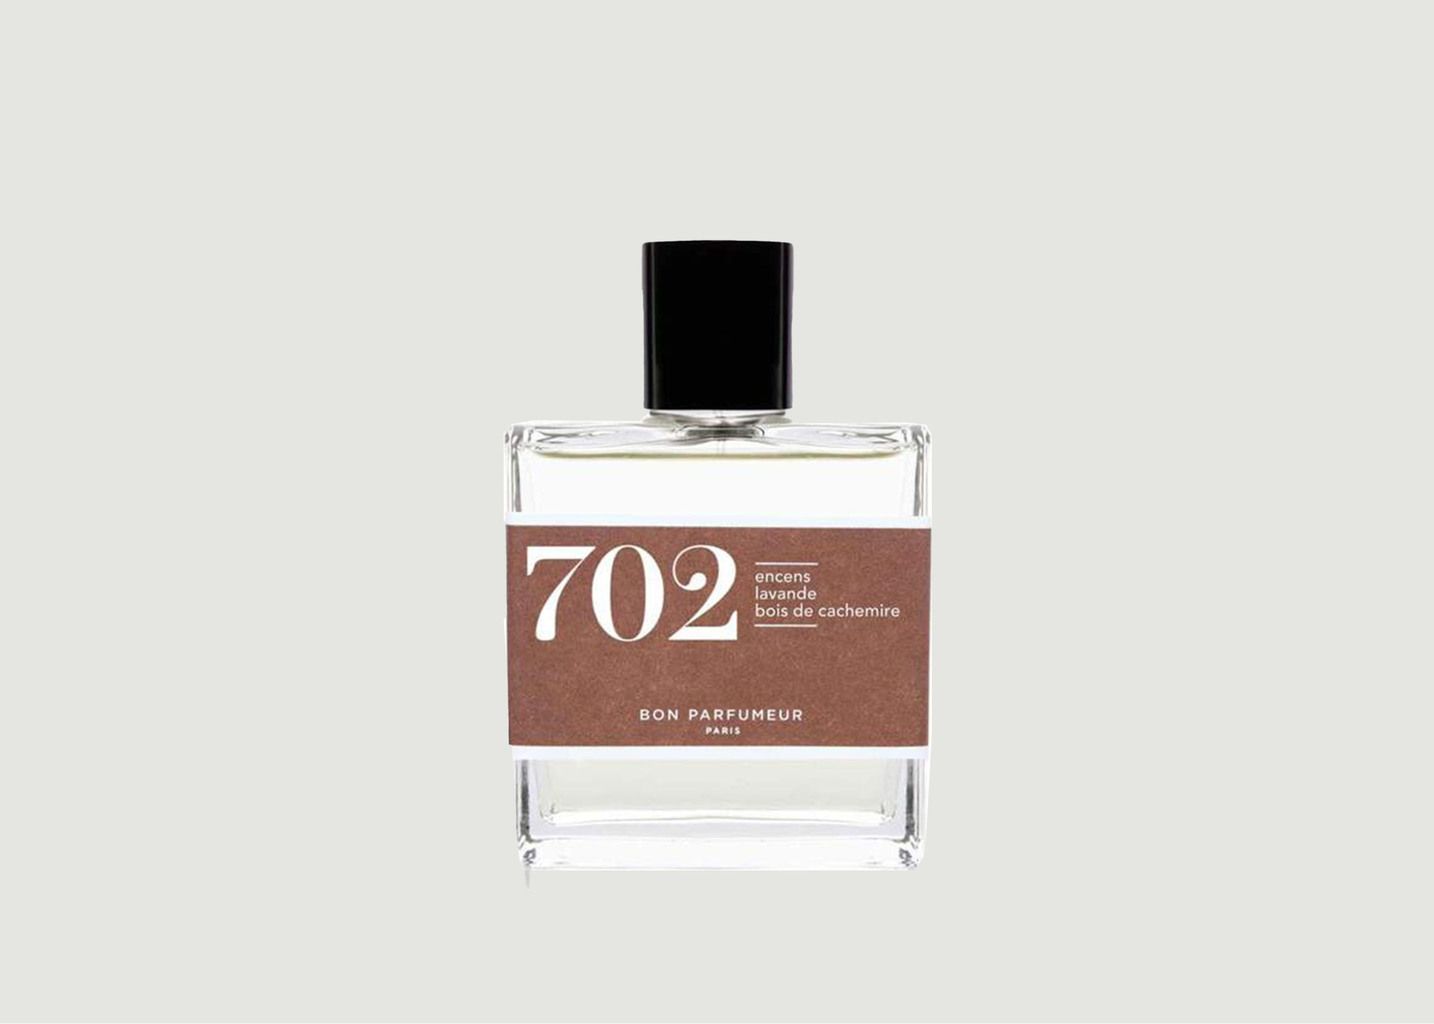 Eau de Parfum 702 : Incense, Lavender, Cashmere wood - Bon Parfumeur